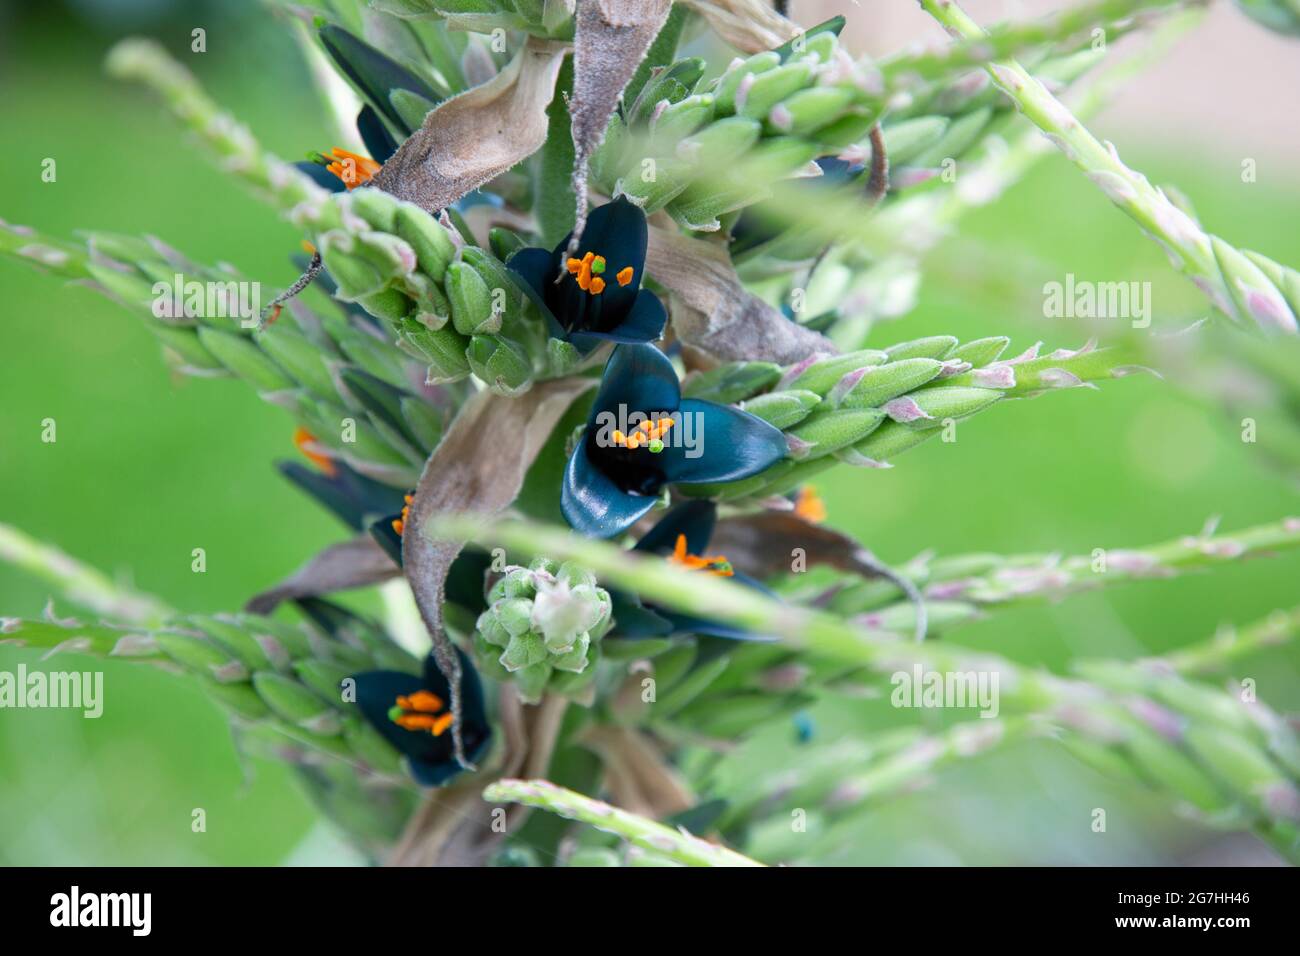 Die blaue Blüte der puya alpestris, auch Saphirturm genannt, ist eine Bromeliadart, die in den chilenischen Anden beheimatet ist. Stockfoto